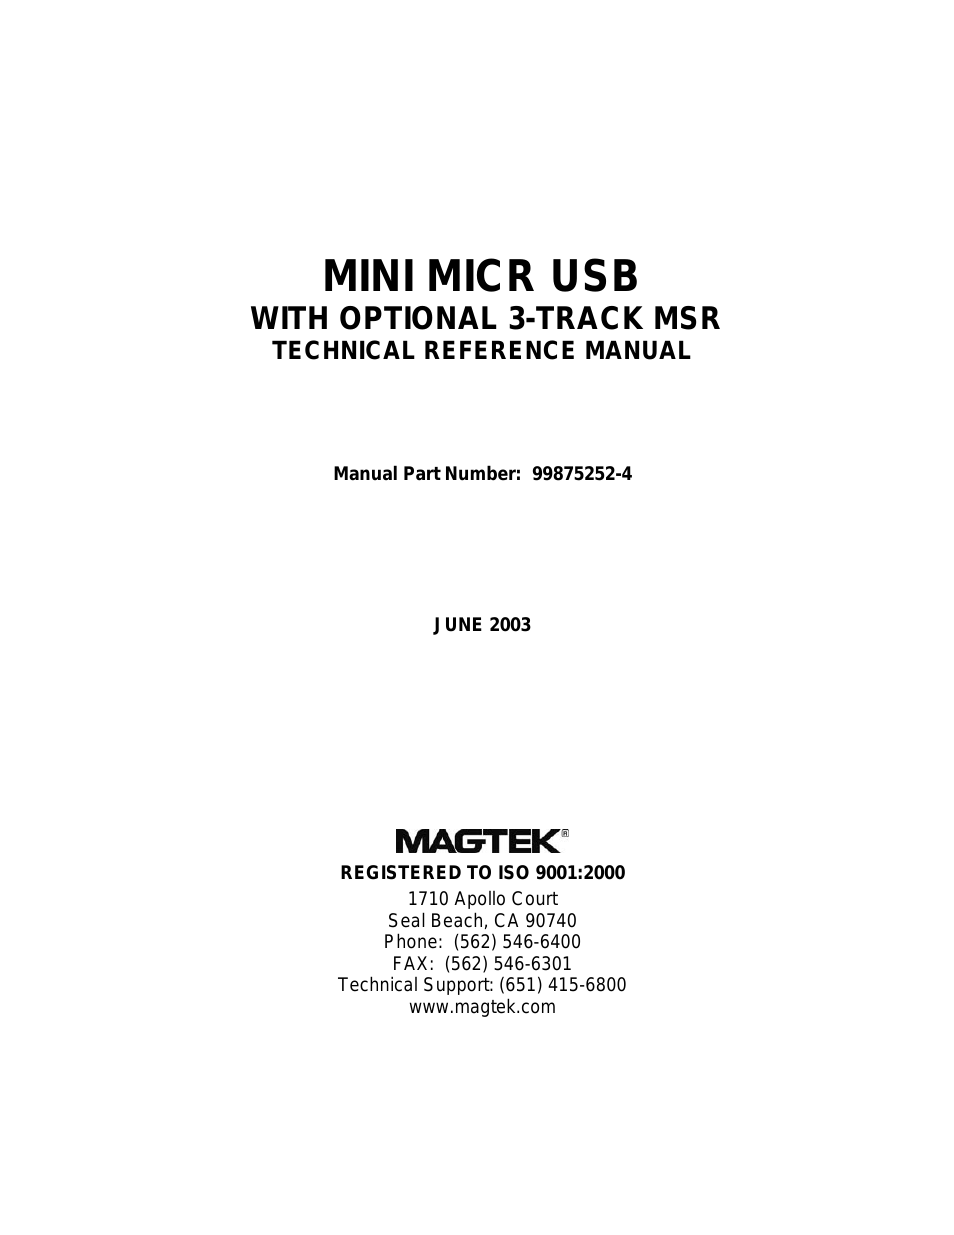 MINI MICR USB